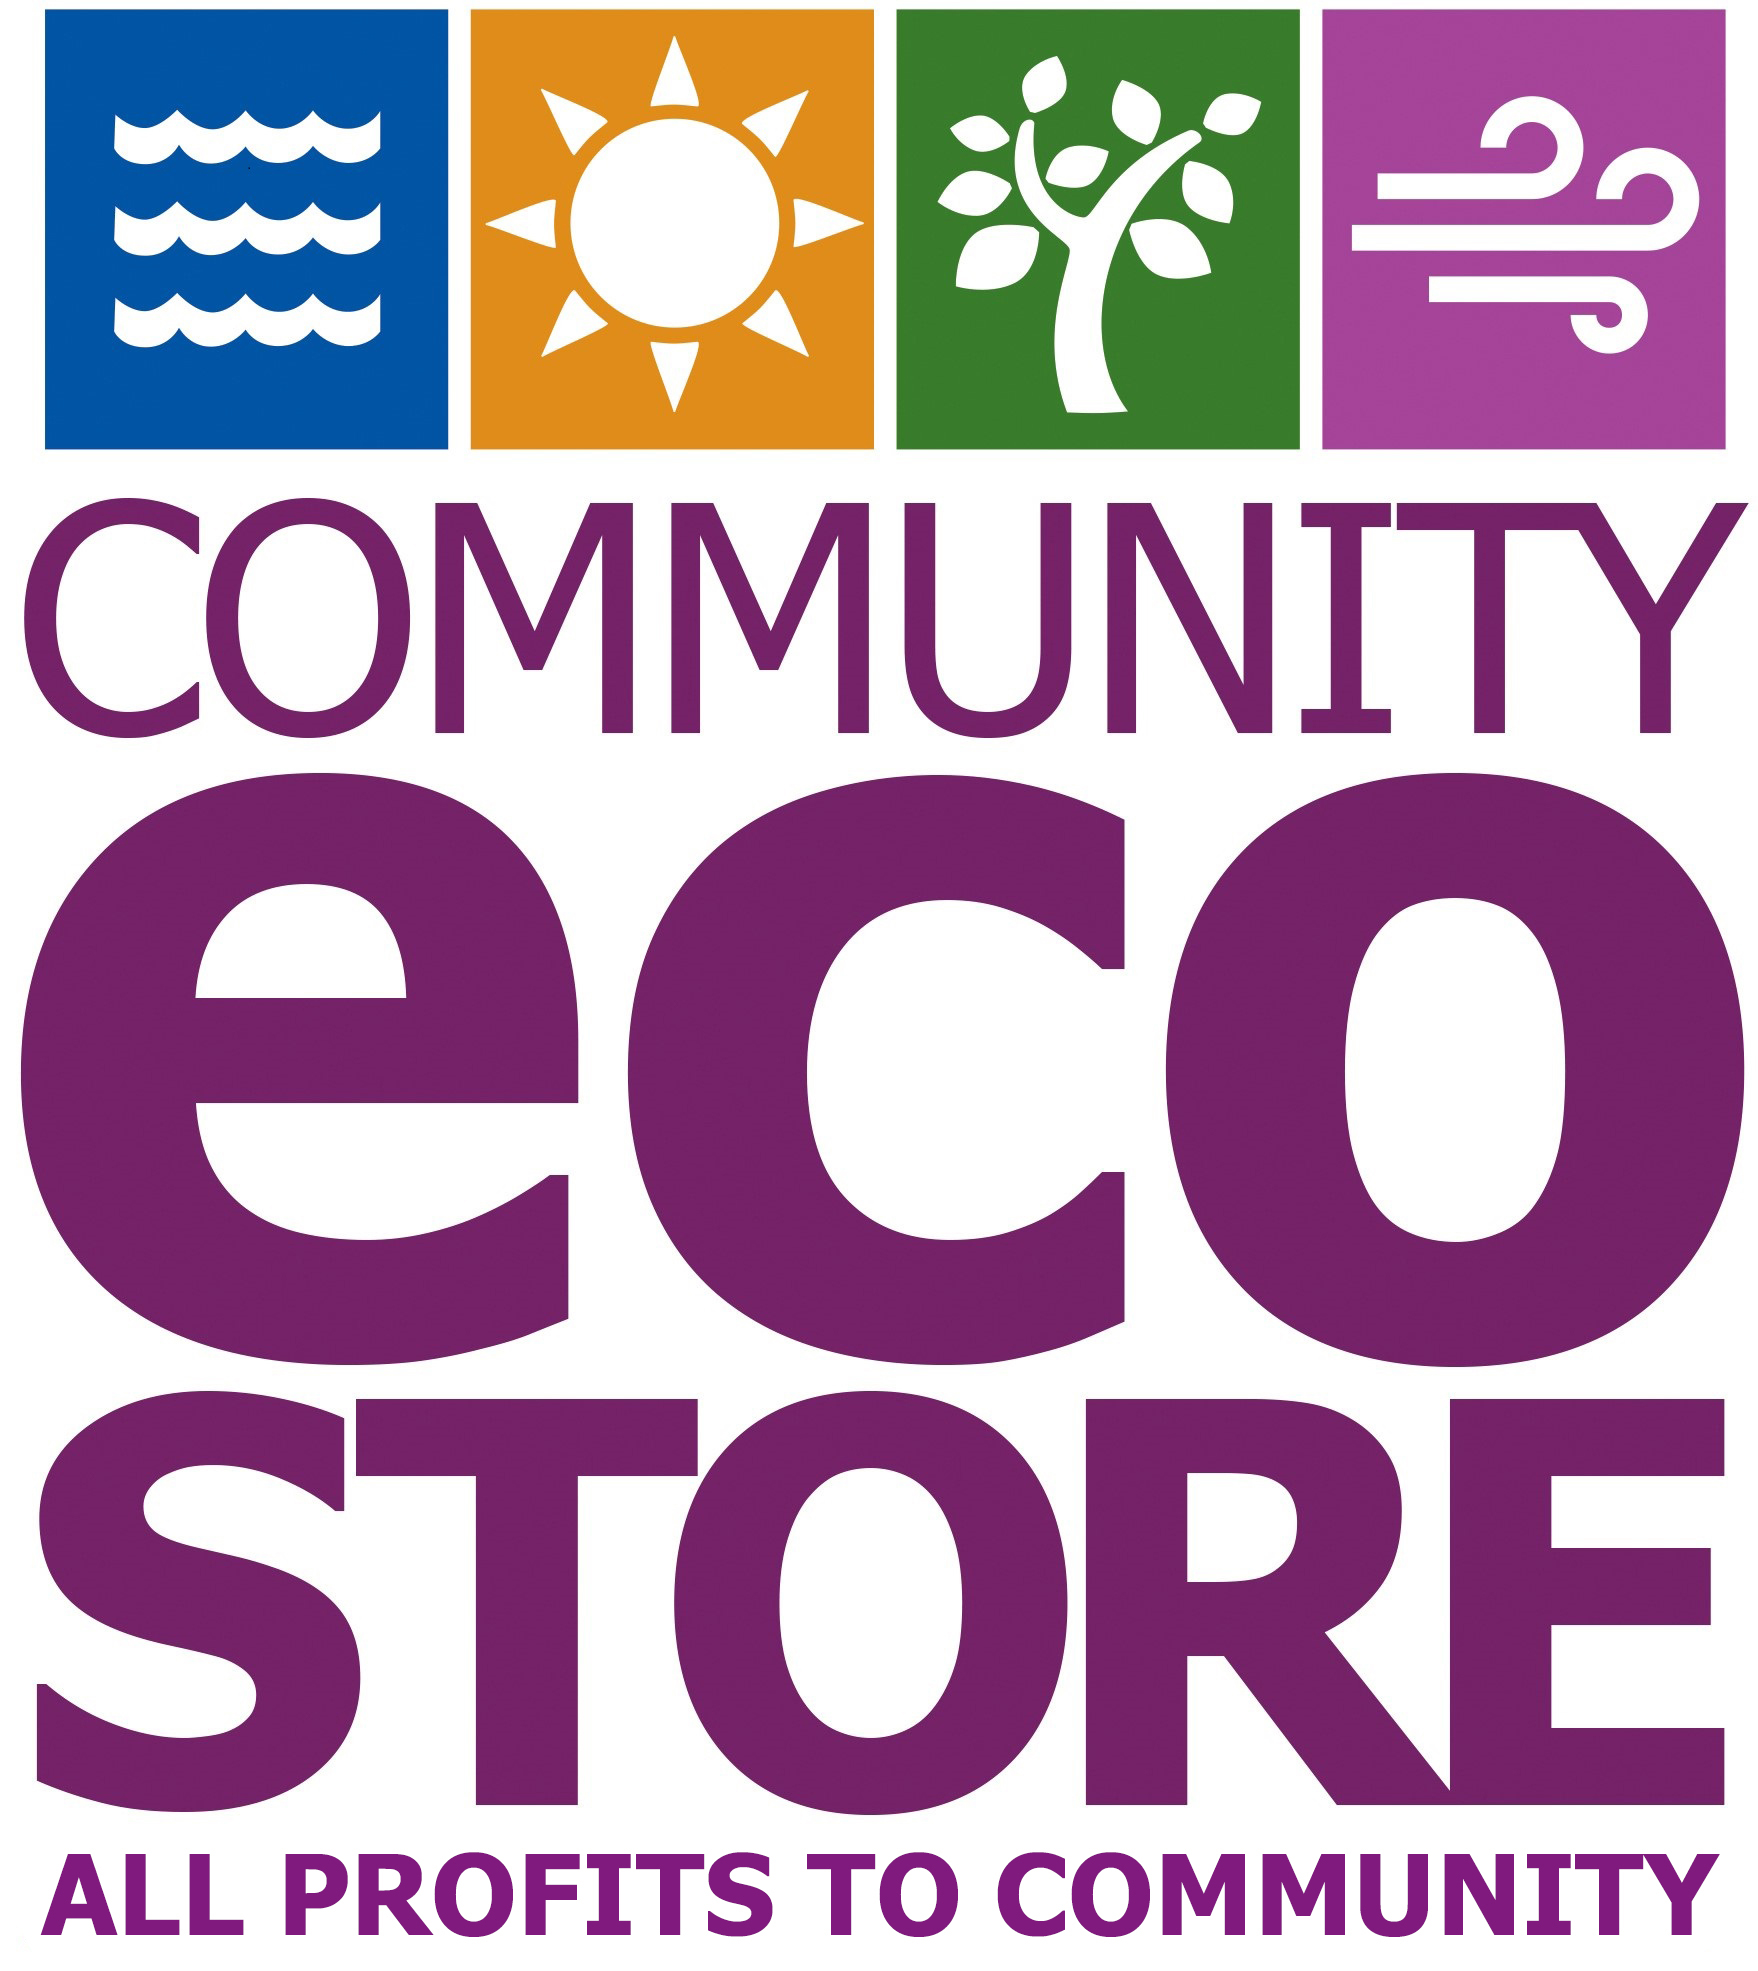 Community Eco Store